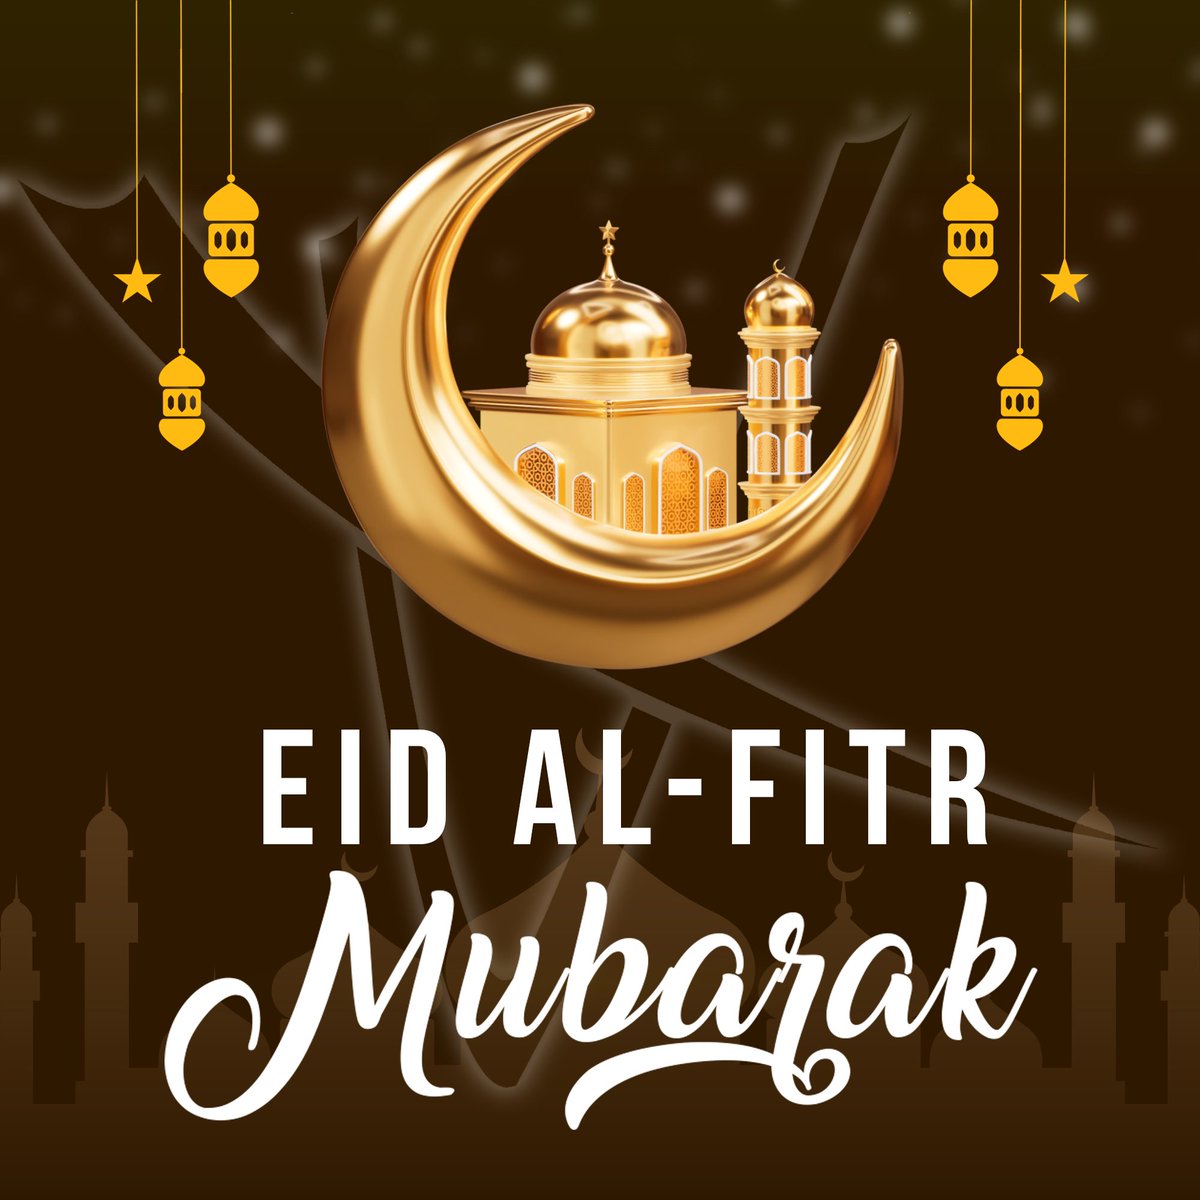 نهنئكم بحلول عيد الفطر المبارك. كل عام وانتم بخير #EidMubarak